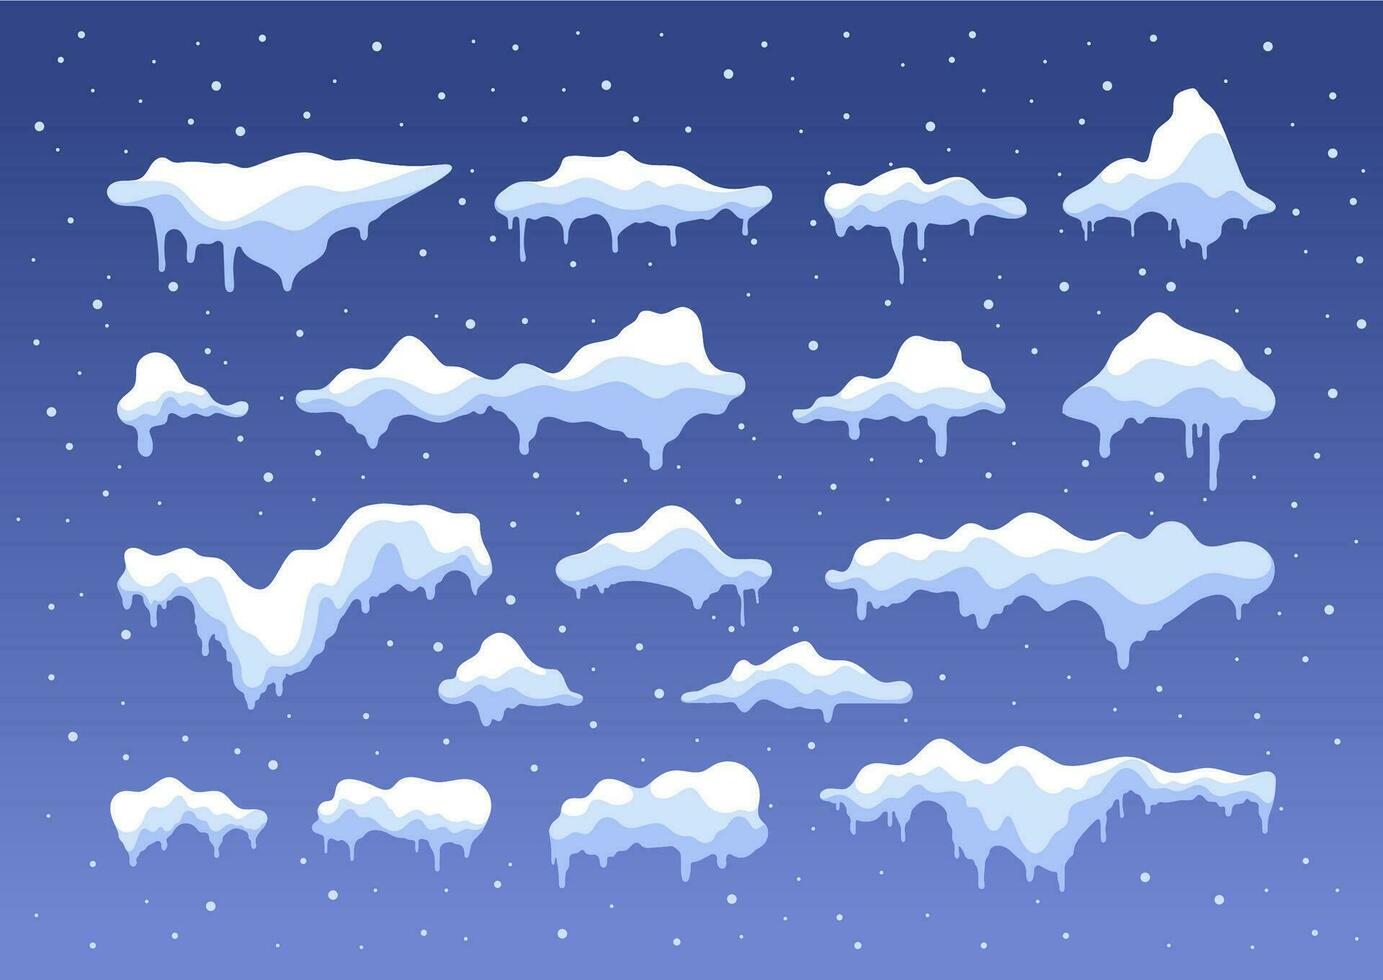 nieve tapas. copo de nieve bola de nieve hielo pila plano dibujos animados estilo, Nevado congelado invierno Navidad decoración elementos. vector aislado colección